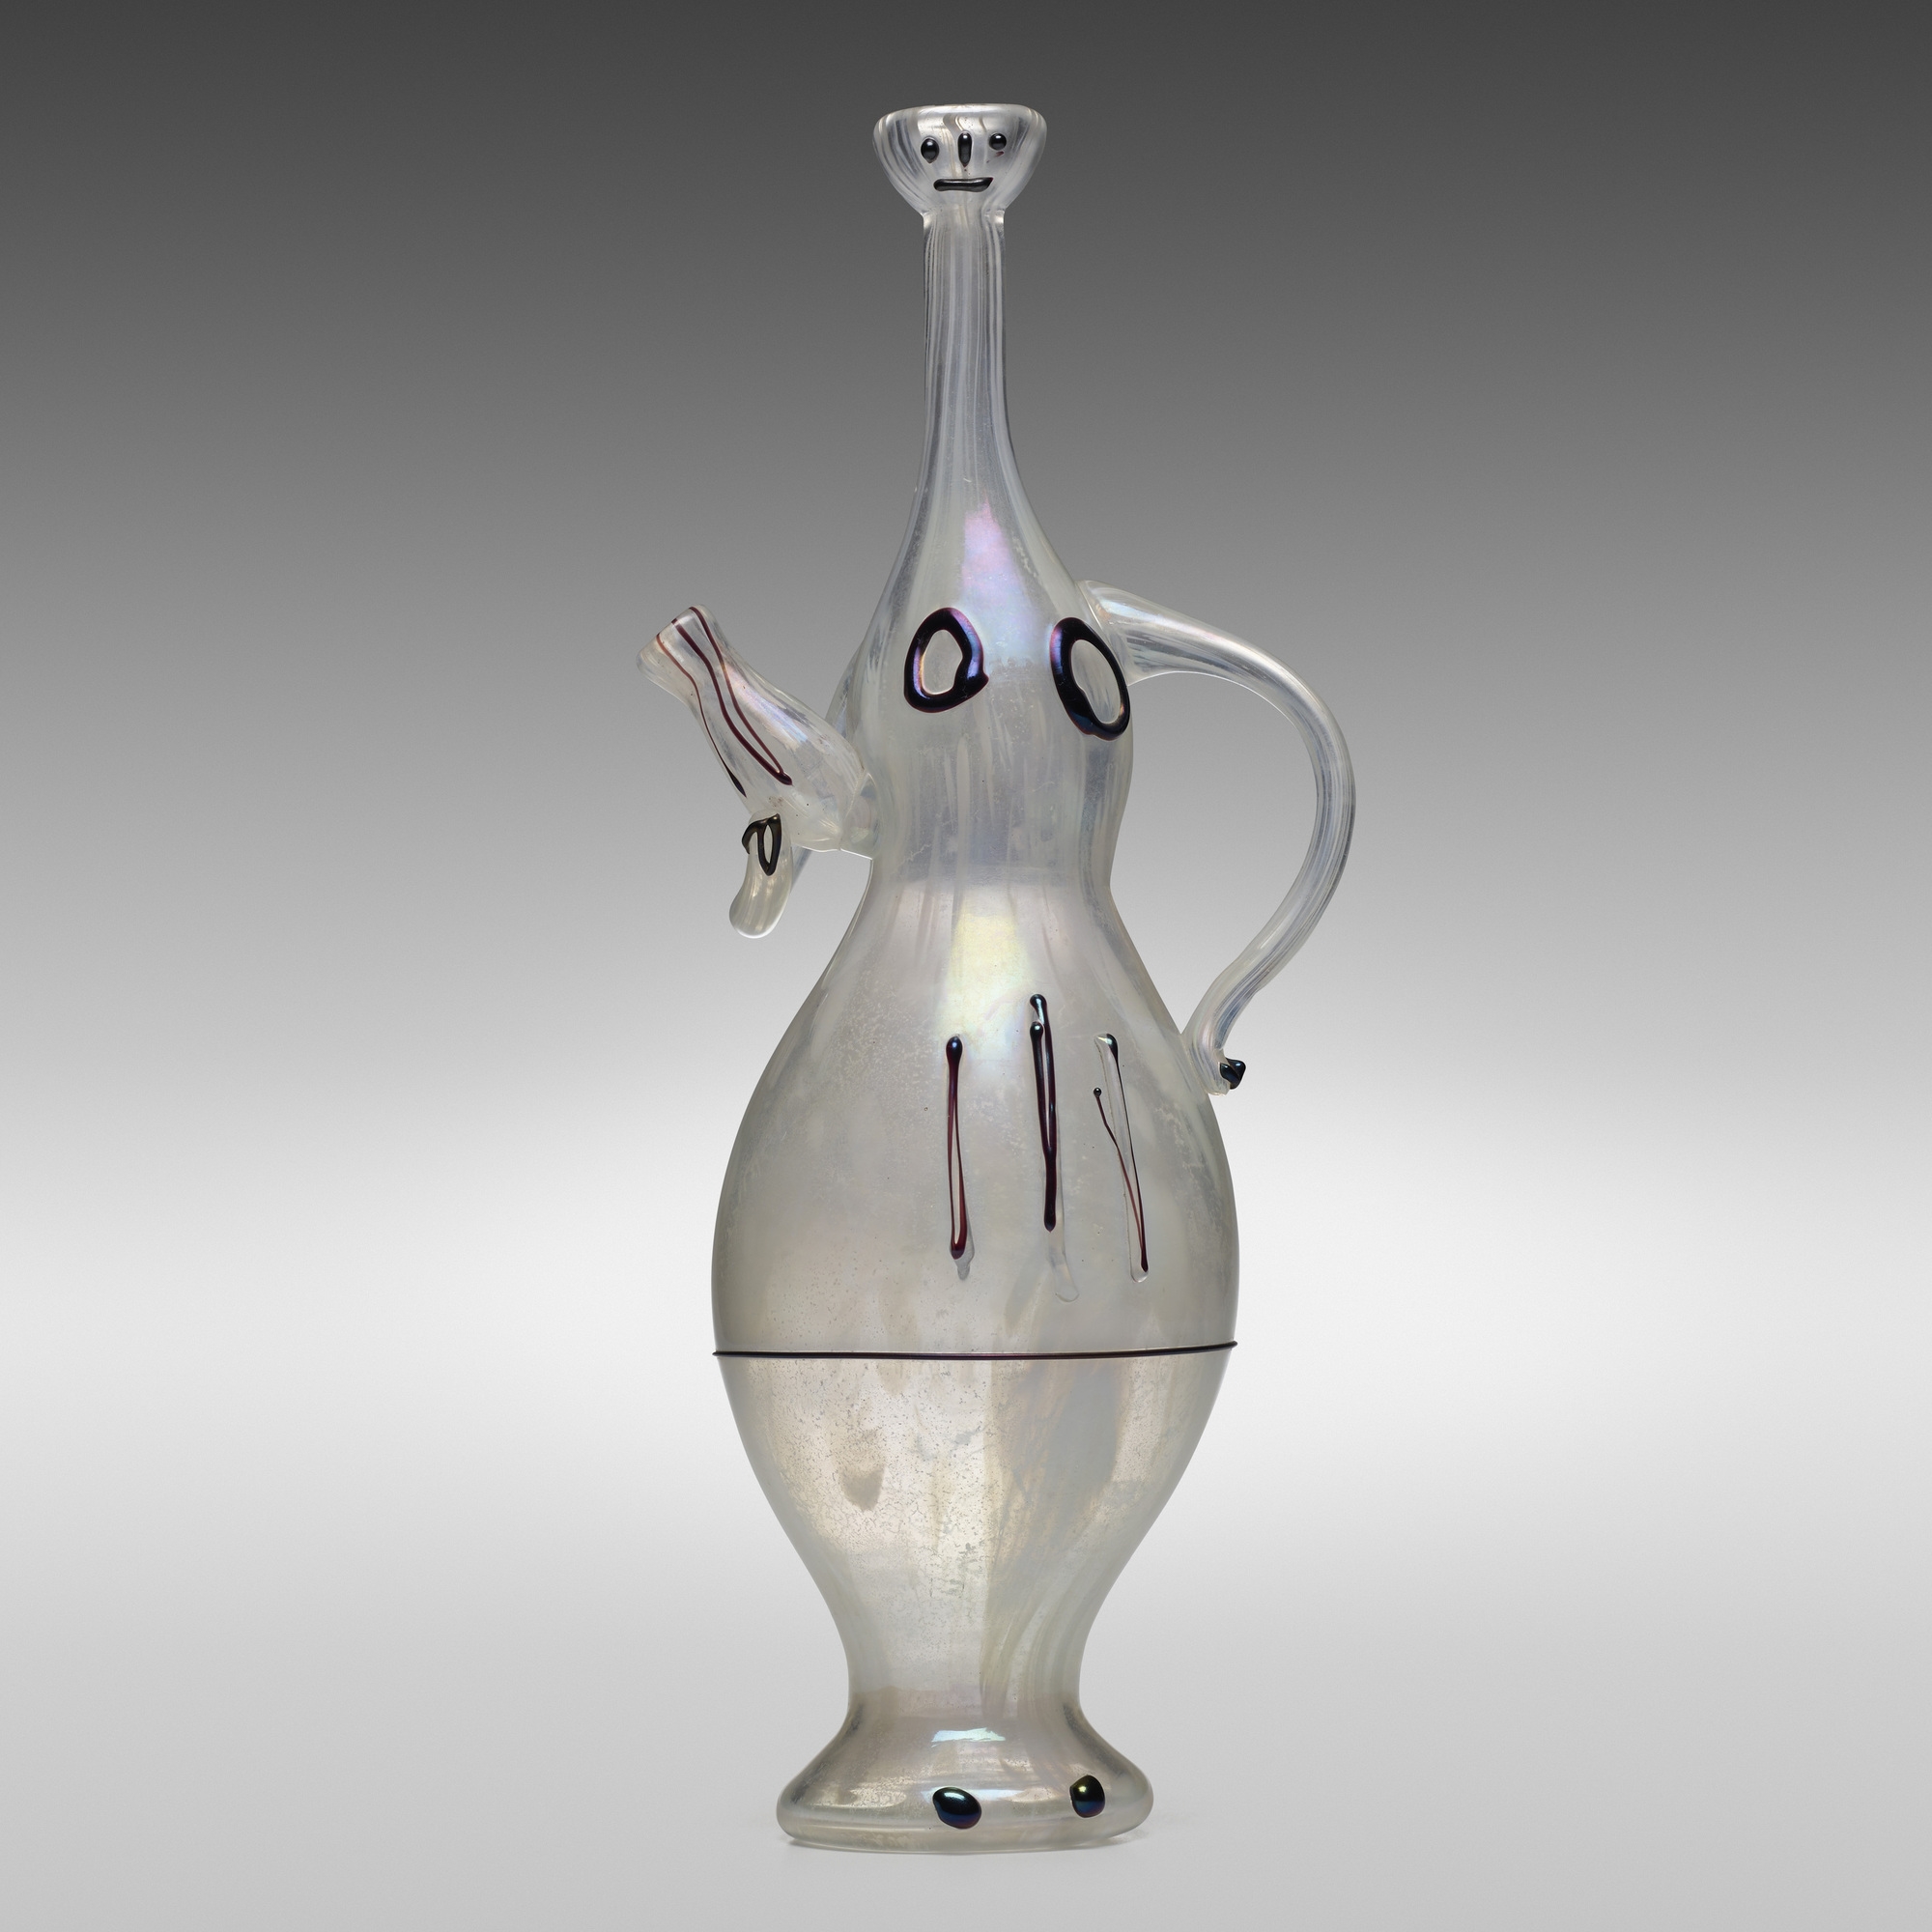 Artwork by Pablo Picasso, Portatrice d'Acqua pitcher, Made of glass